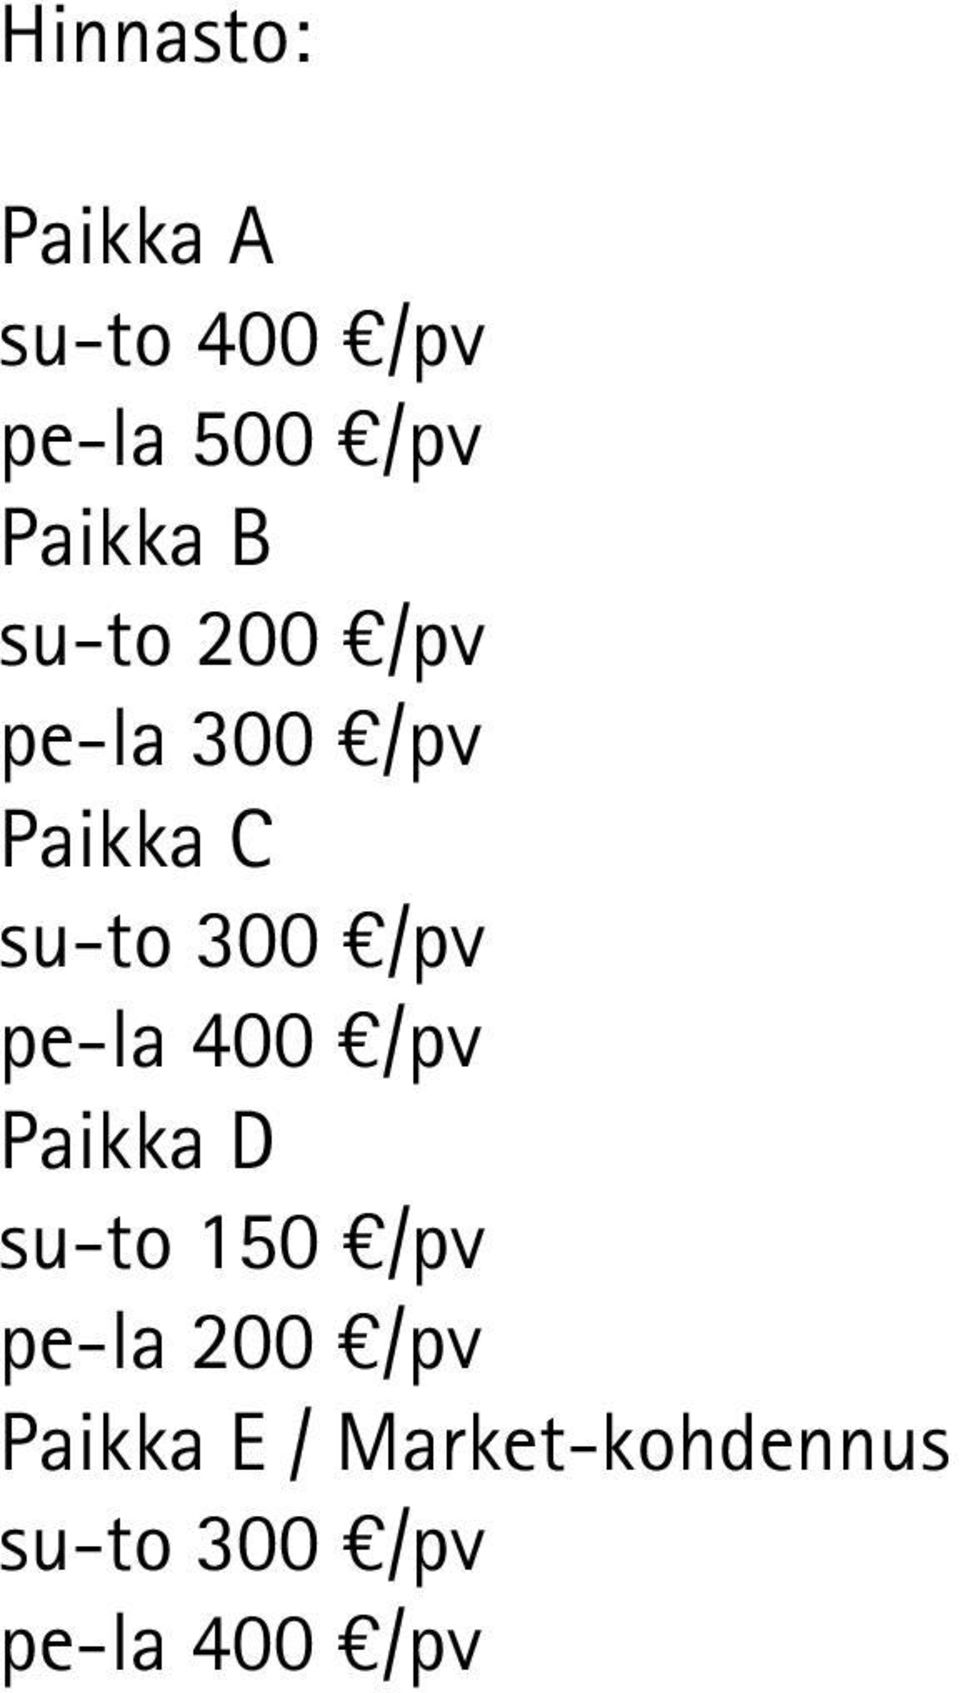 pe-la 400 /pv Paikka D su-to 150 /pv pe-la 200 /pv